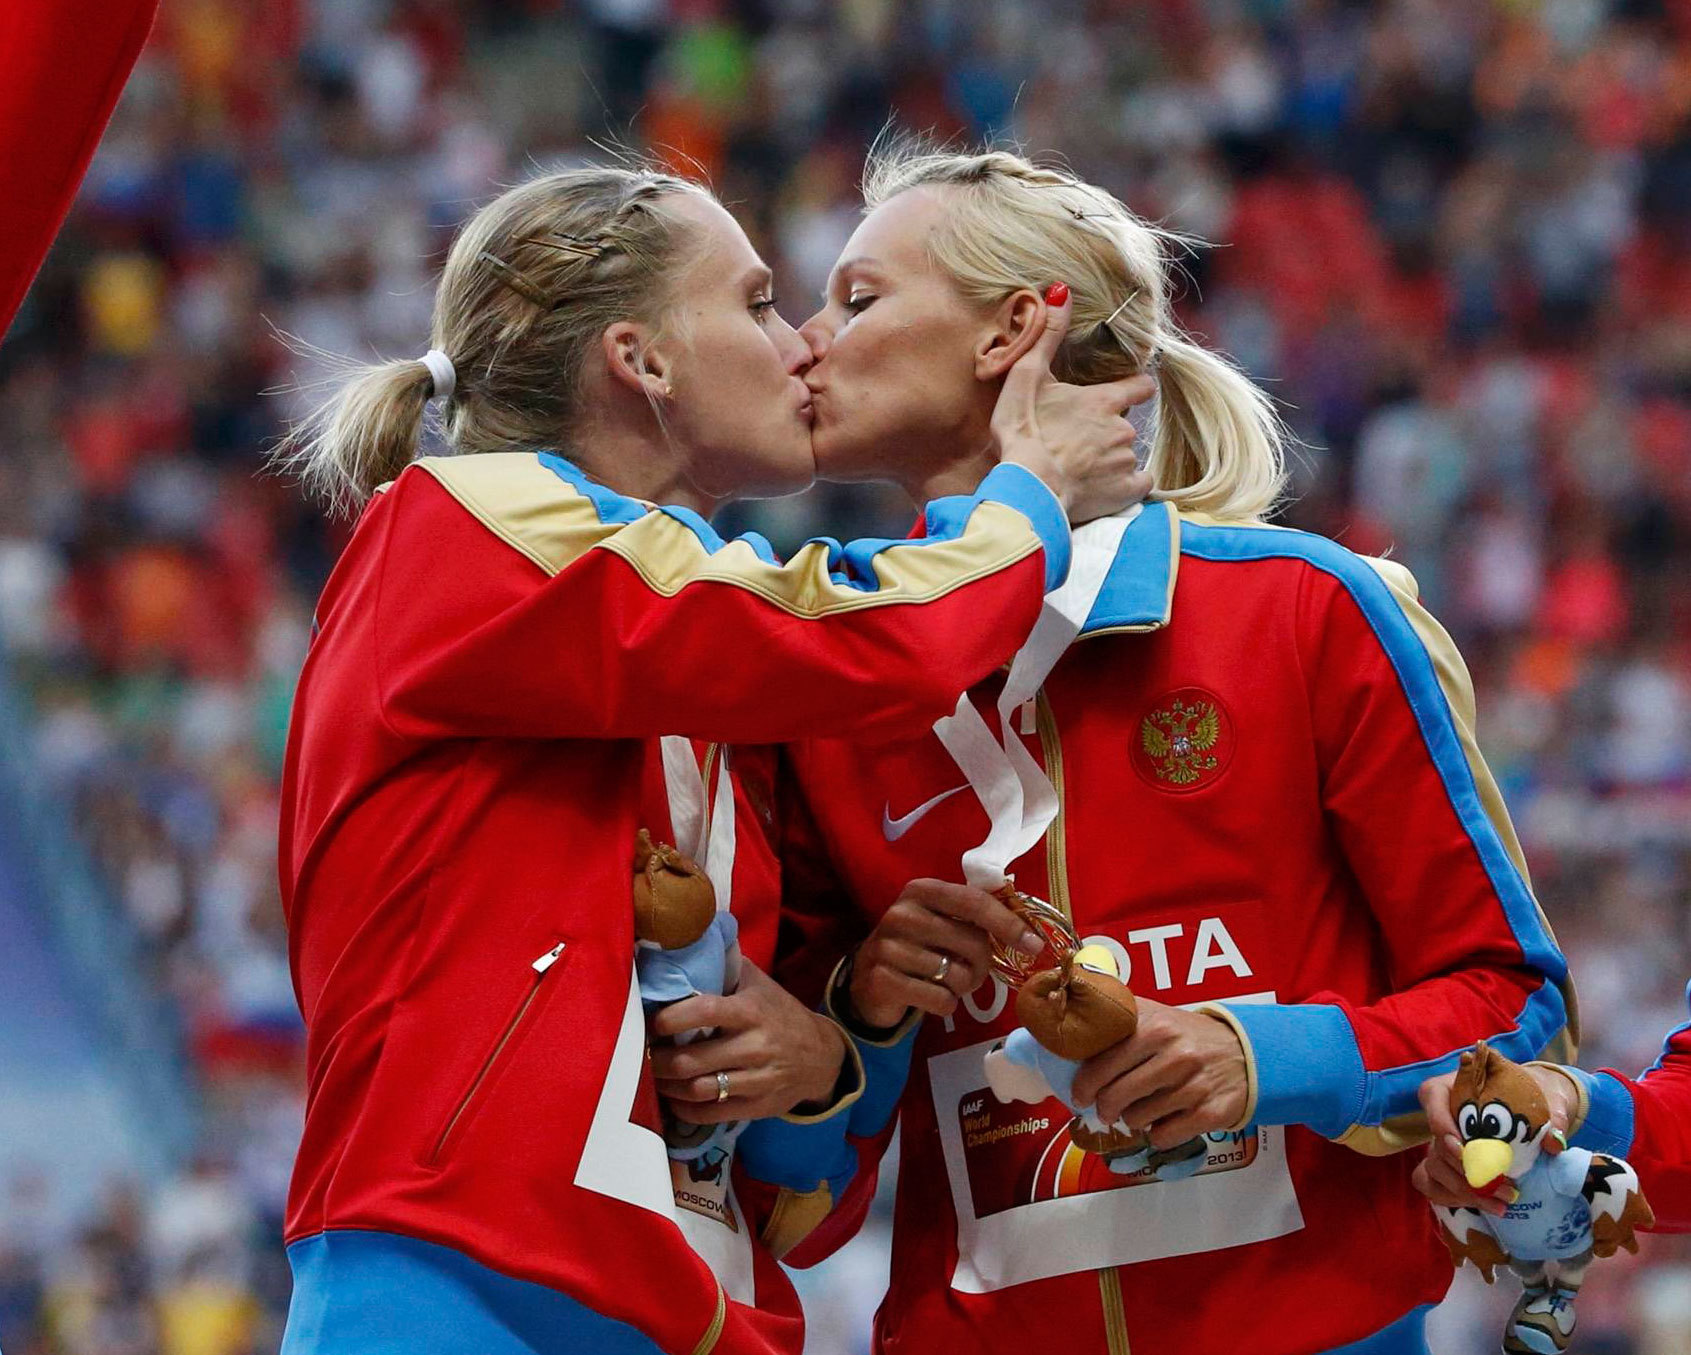 Γιατί φιλήθηκαν στο στόμα οι δυο ρωσίδες αθλήτριες;